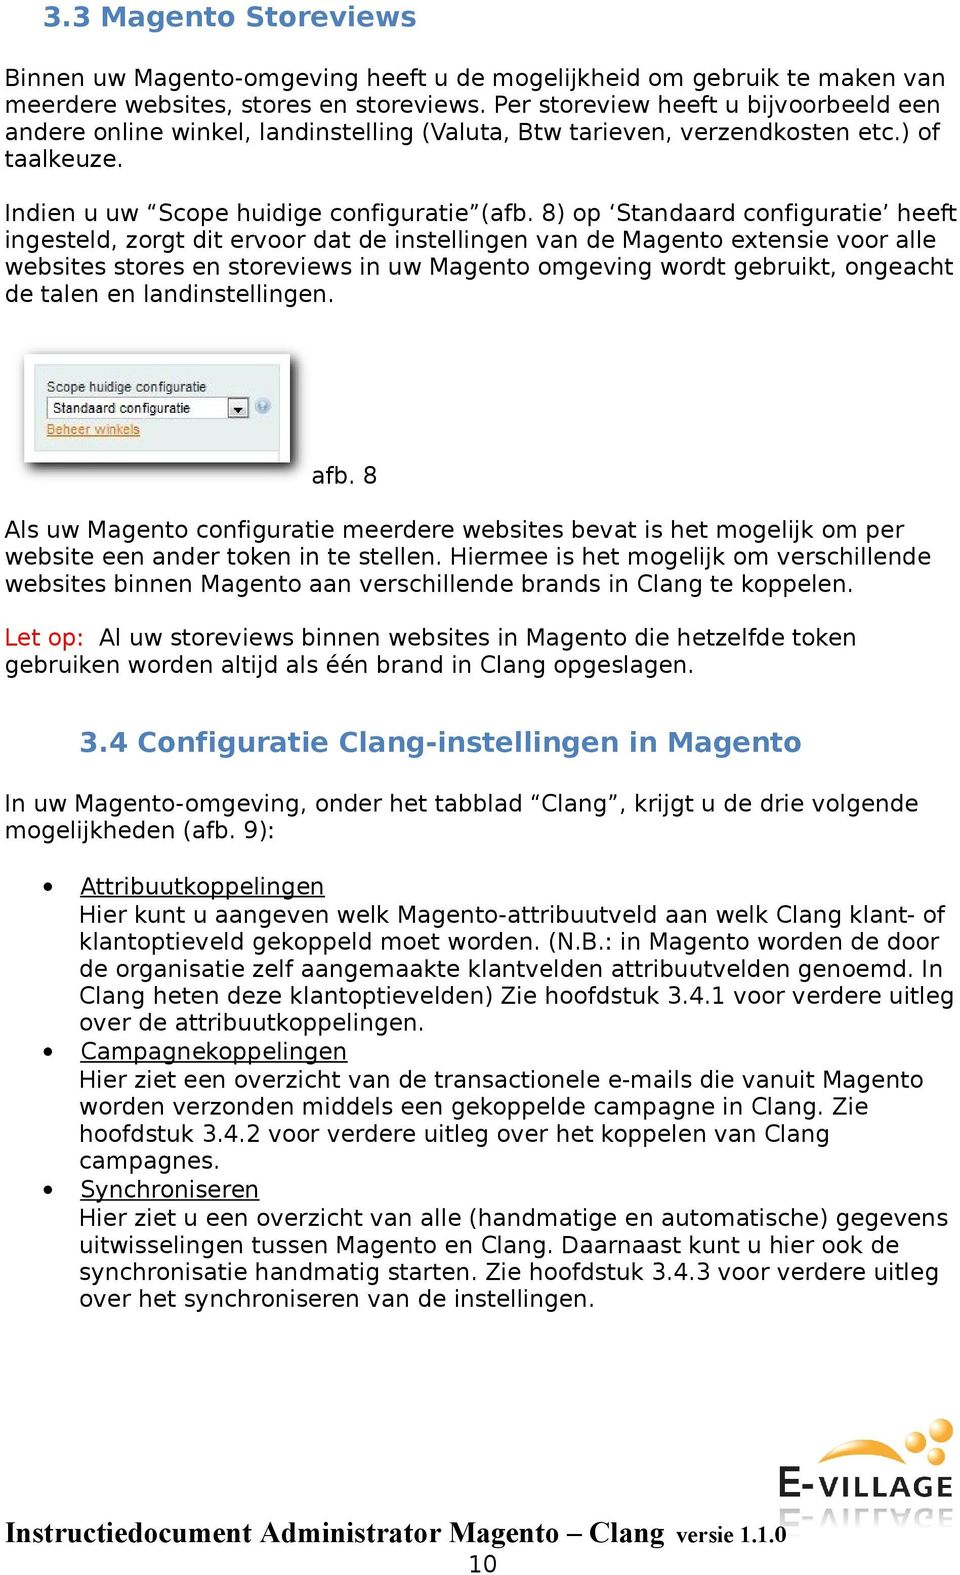 8) op Standaard configuratie heeft ingesteld, zorgt dit ervoor dat de instellingen van de Magento extensie voor alle websites stores en storeviews in uw Magento omgeving wordt gebruikt, ongeacht de